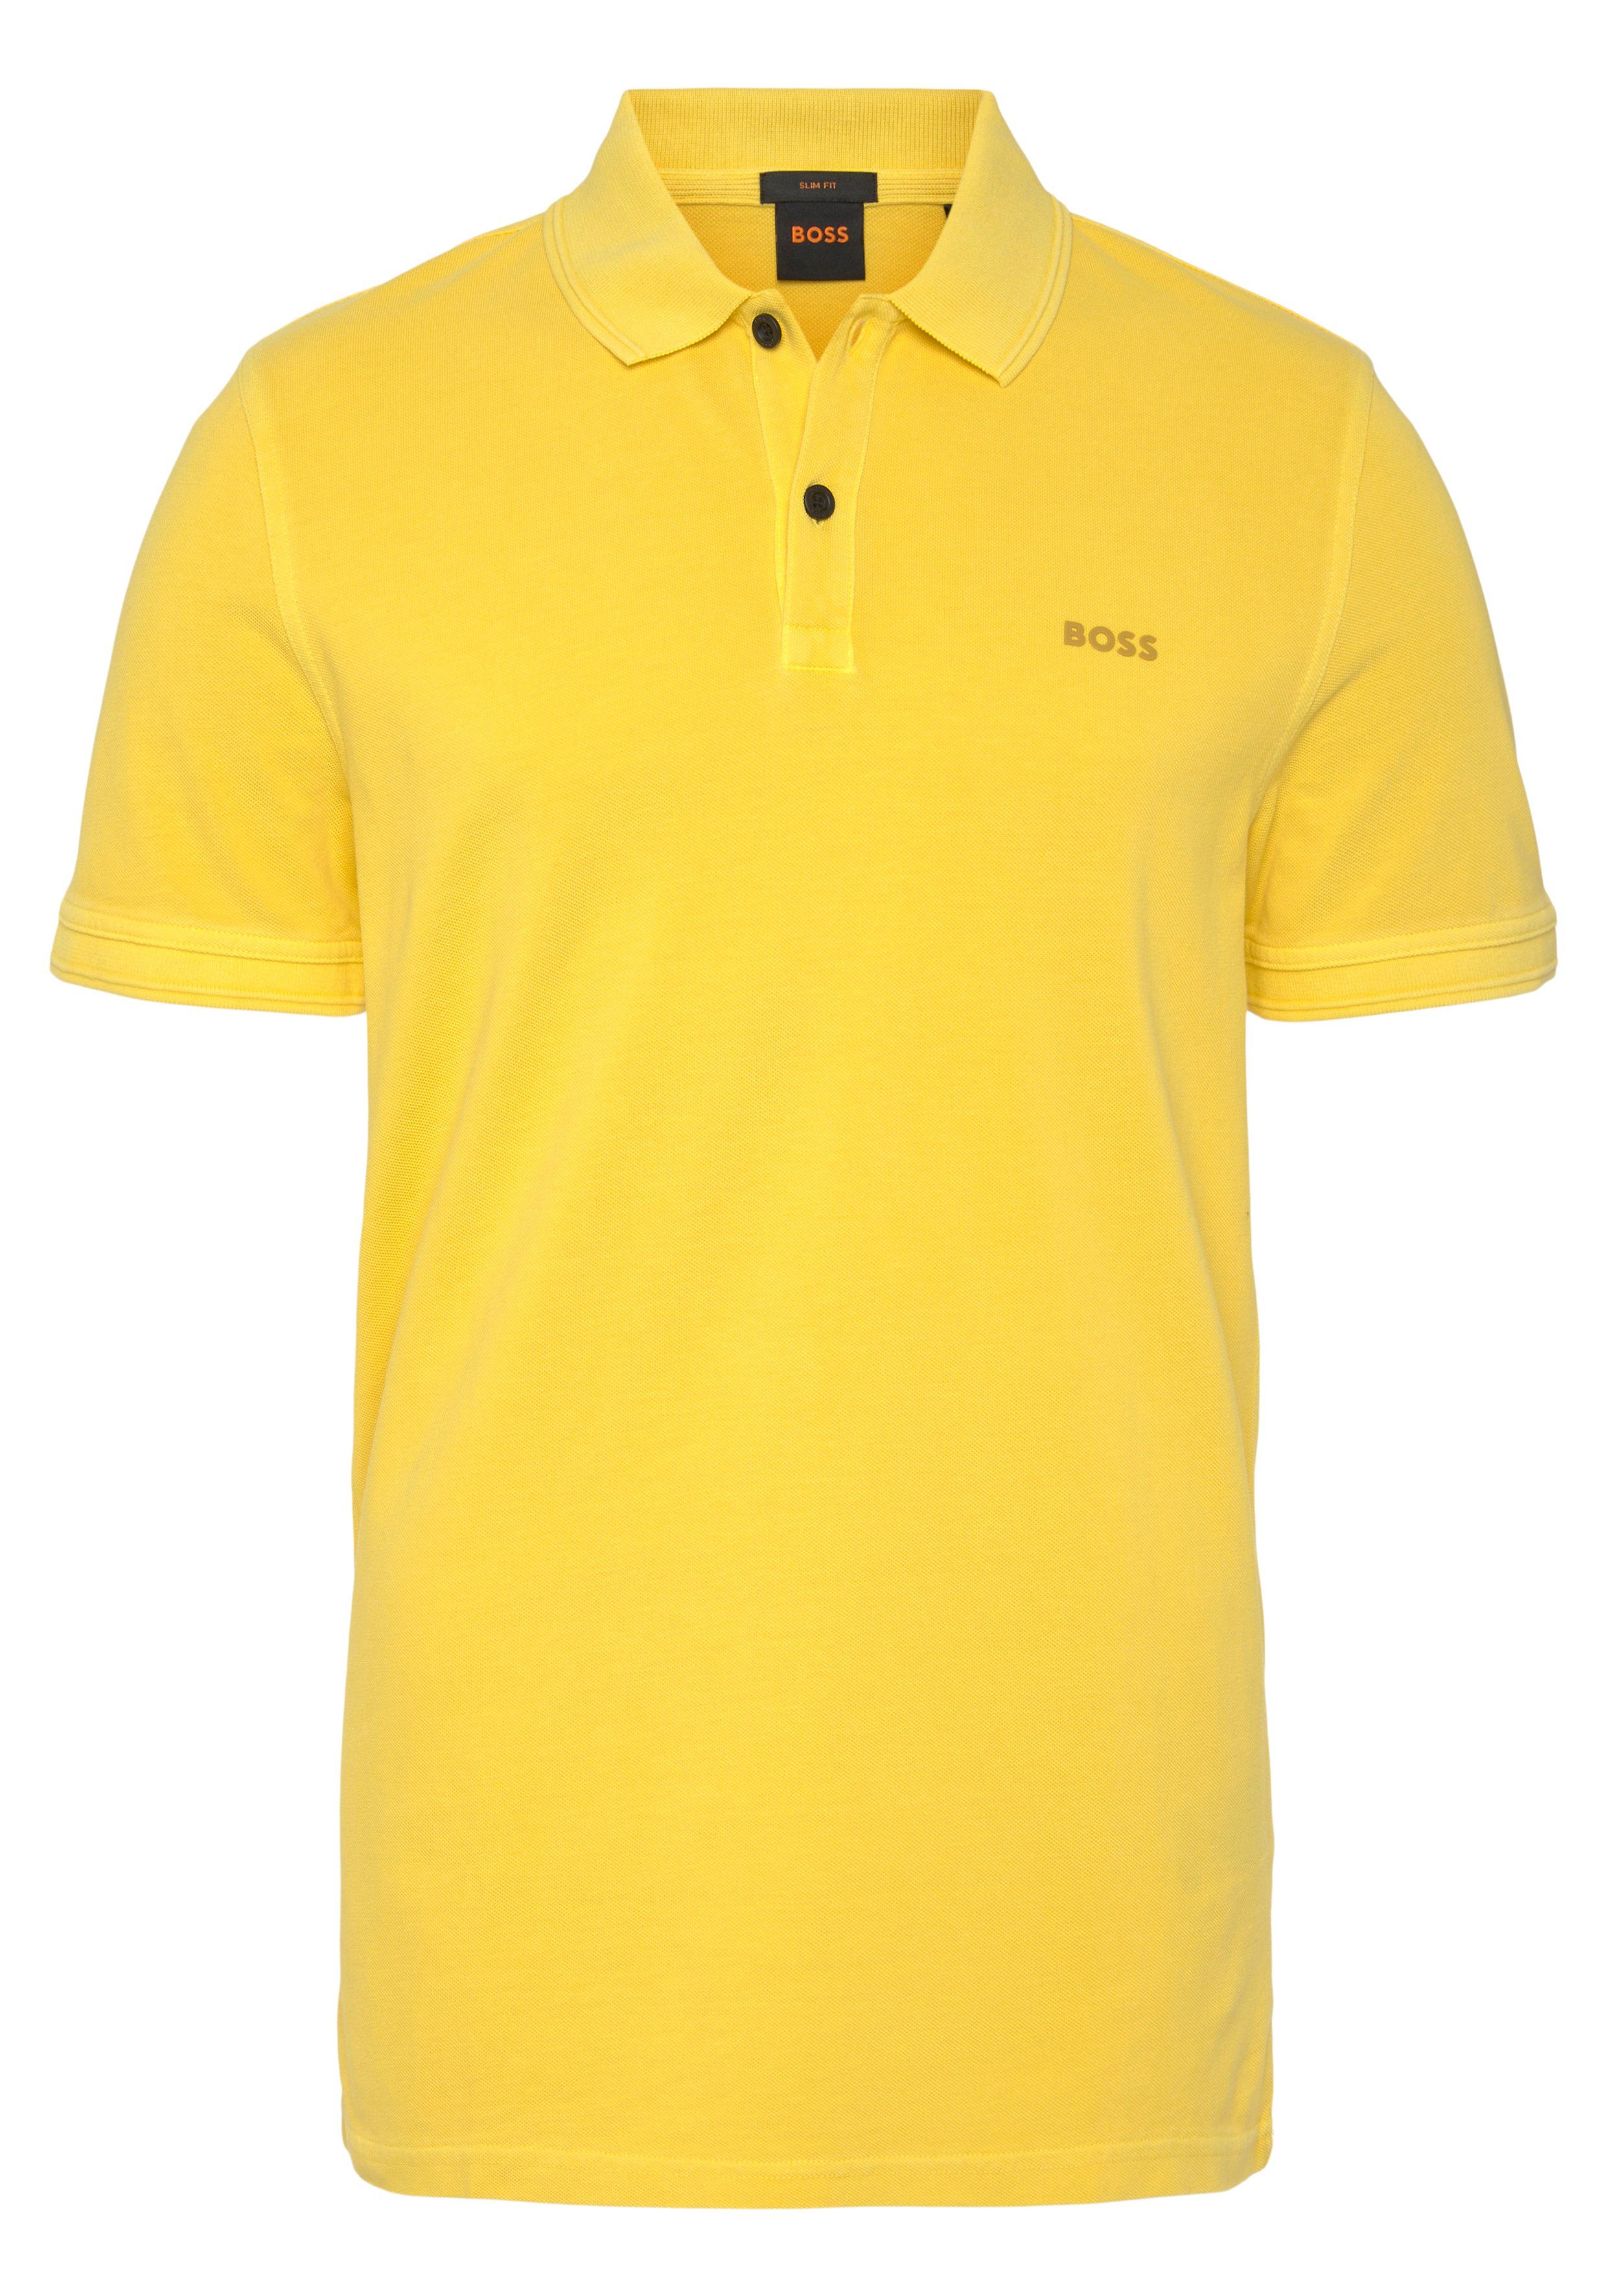 BOSS ORANGE Poloshirt auf 01 der Brust Logoschriftzug 10203439 Prime dezentem Light/Pastel_Yellow mit